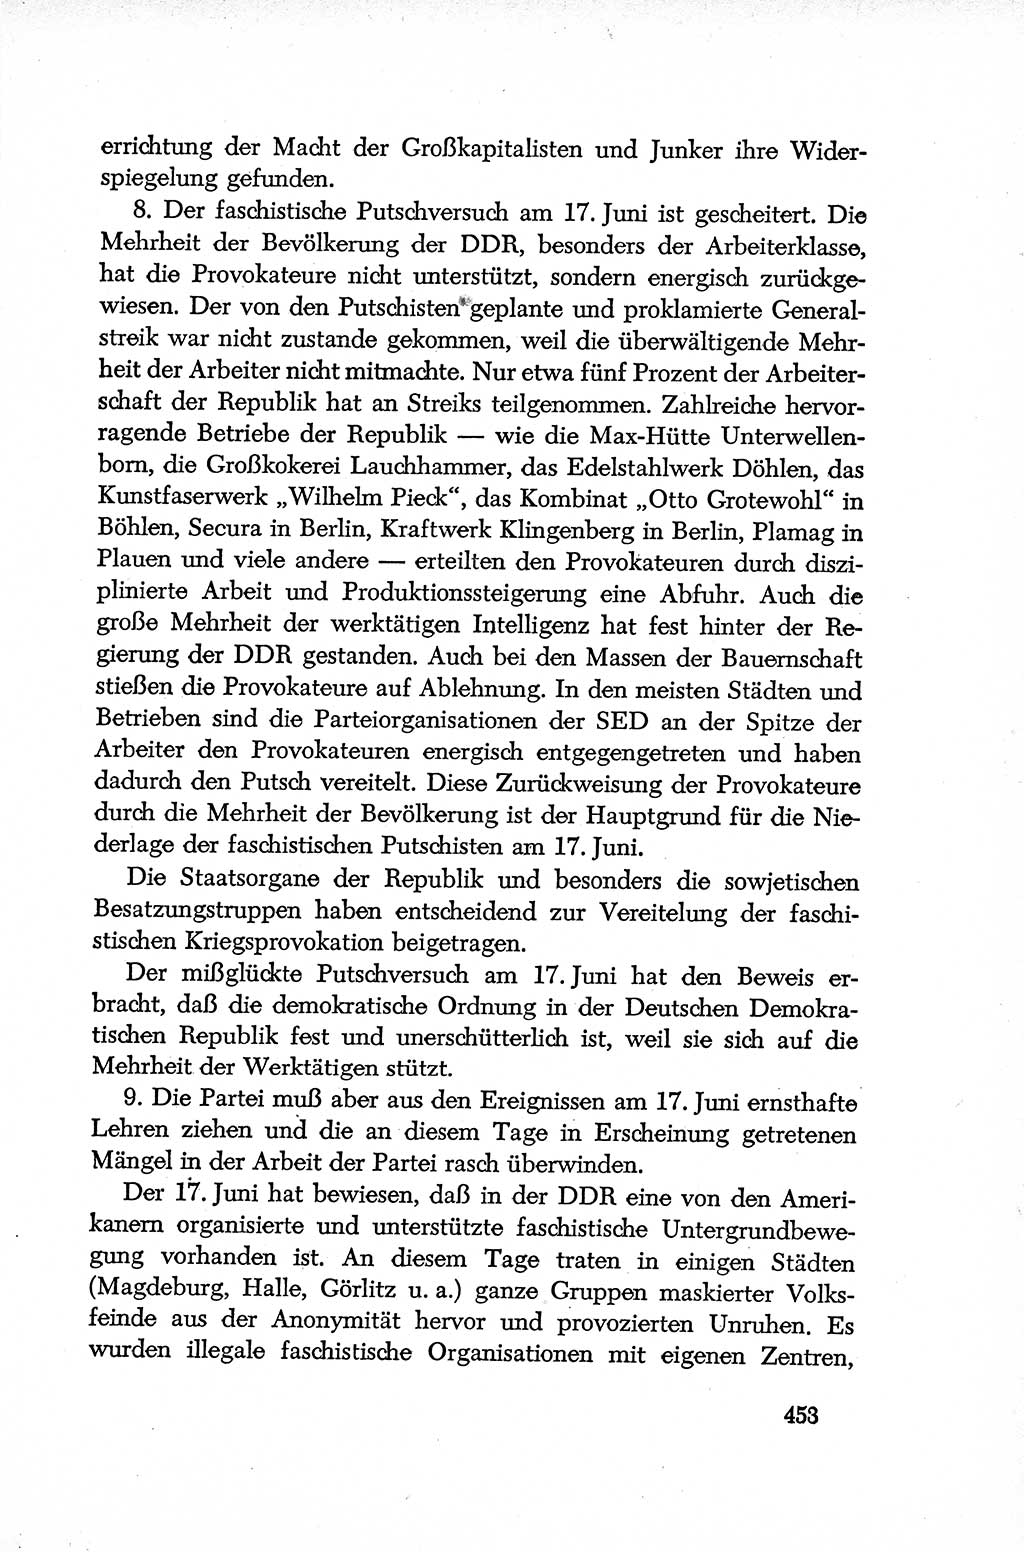 Dokumente der Sozialistischen Einheitspartei Deutschlands (SED) [Deutsche Demokratische Republik (DDR)] 1952-1953, Seite 453 (Dok. SED DDR 1952-1953, S. 453)